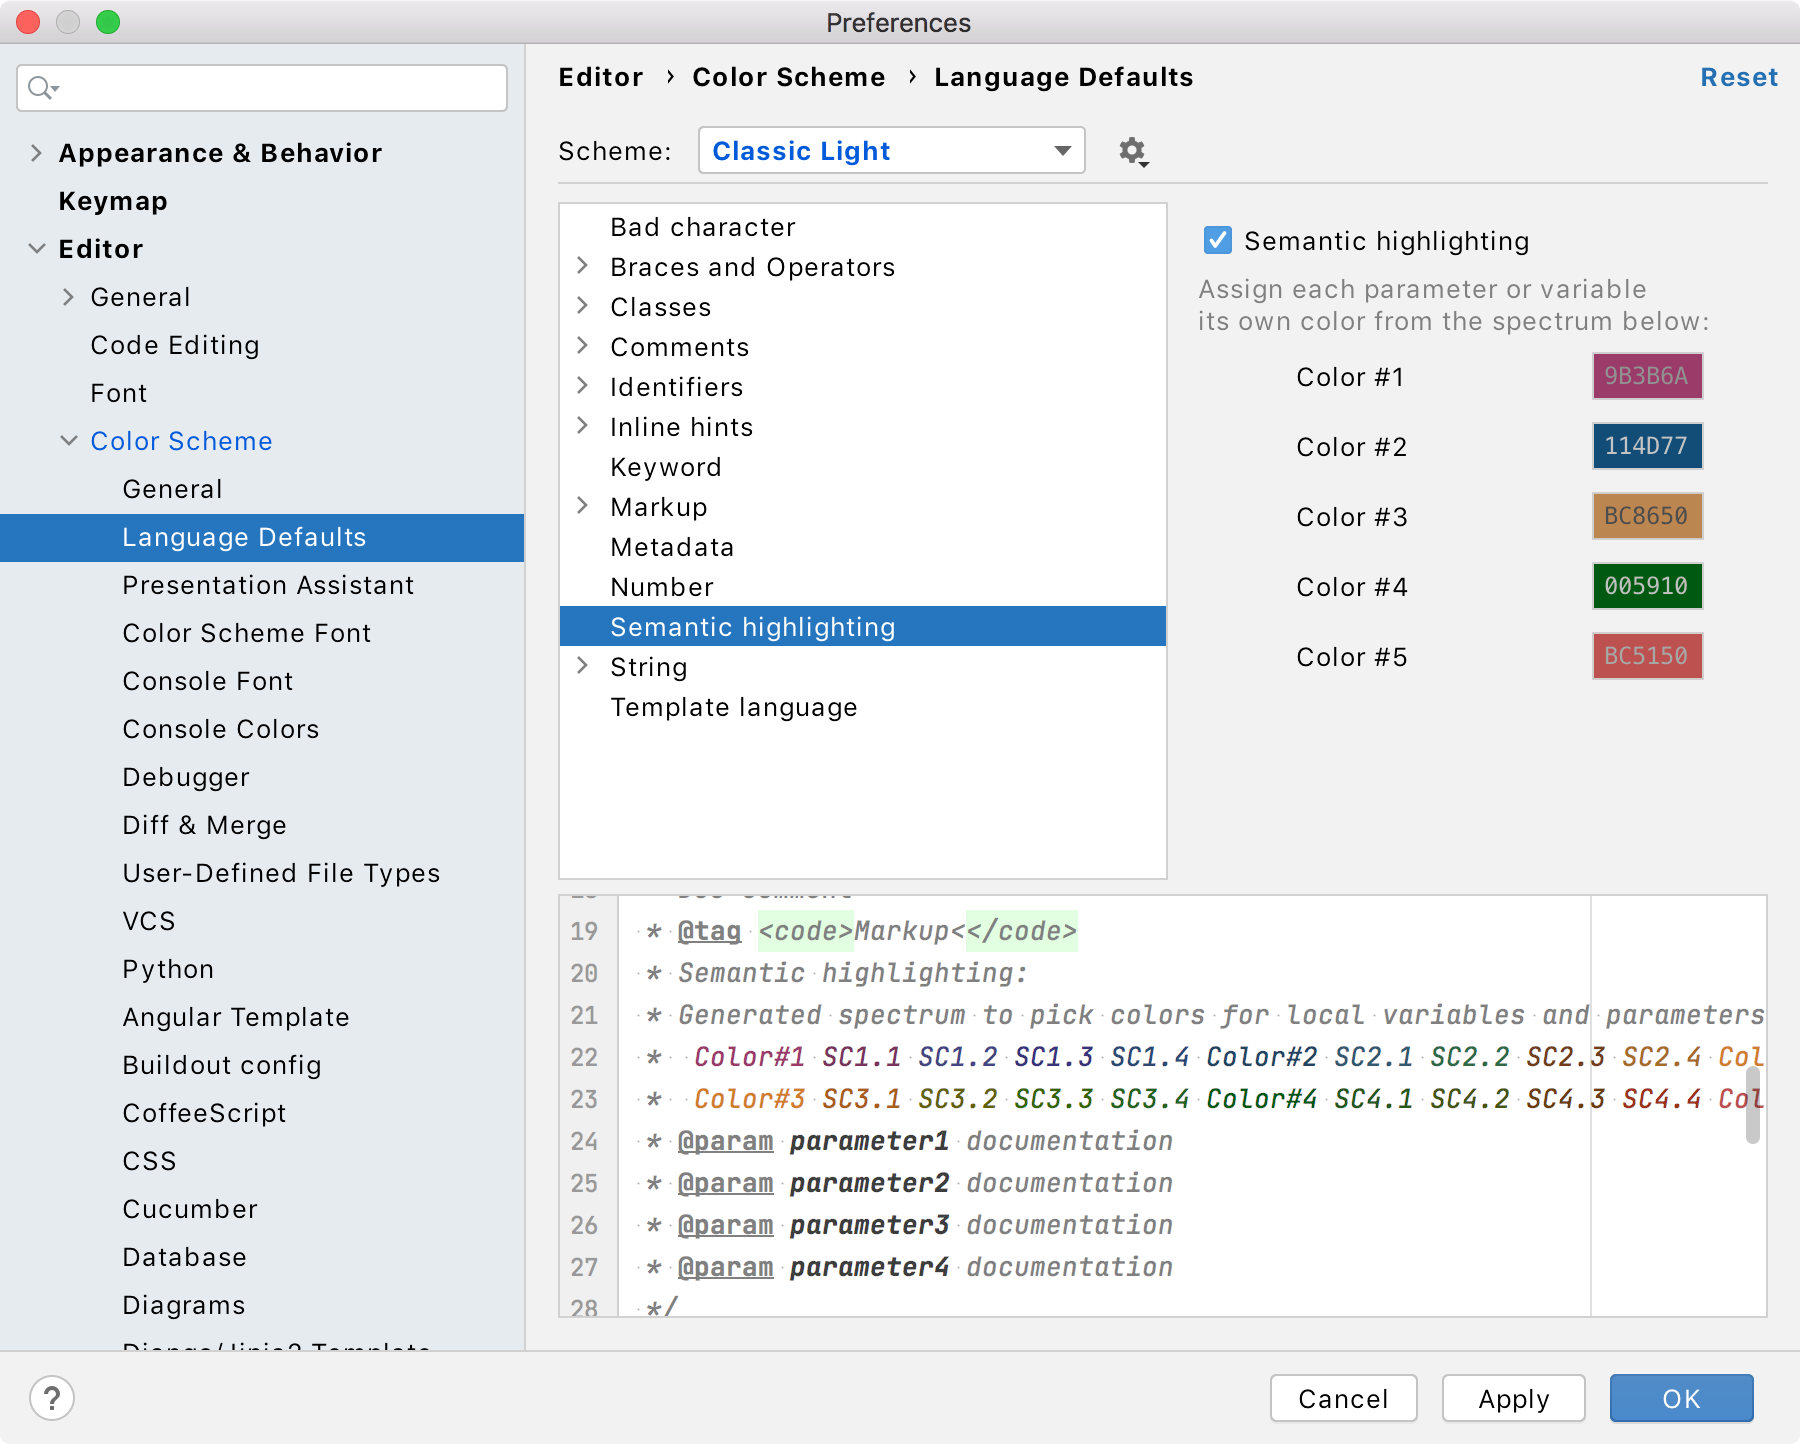 PyCharm là một trình biên tập mã nguồn mở được phát triển bởi JetBrains, và nó cung cấp cho người dùng sự linh hoạt tùy chỉnh về màu sắc và kiểu phông chữ. Hãy xem ảnh liên quan để tìm hiểu thêm về cách thay đổi các lựa chọn màu sắc và kiểu phông chữ để tạo ra trình biên tập mã của riêng bạn.